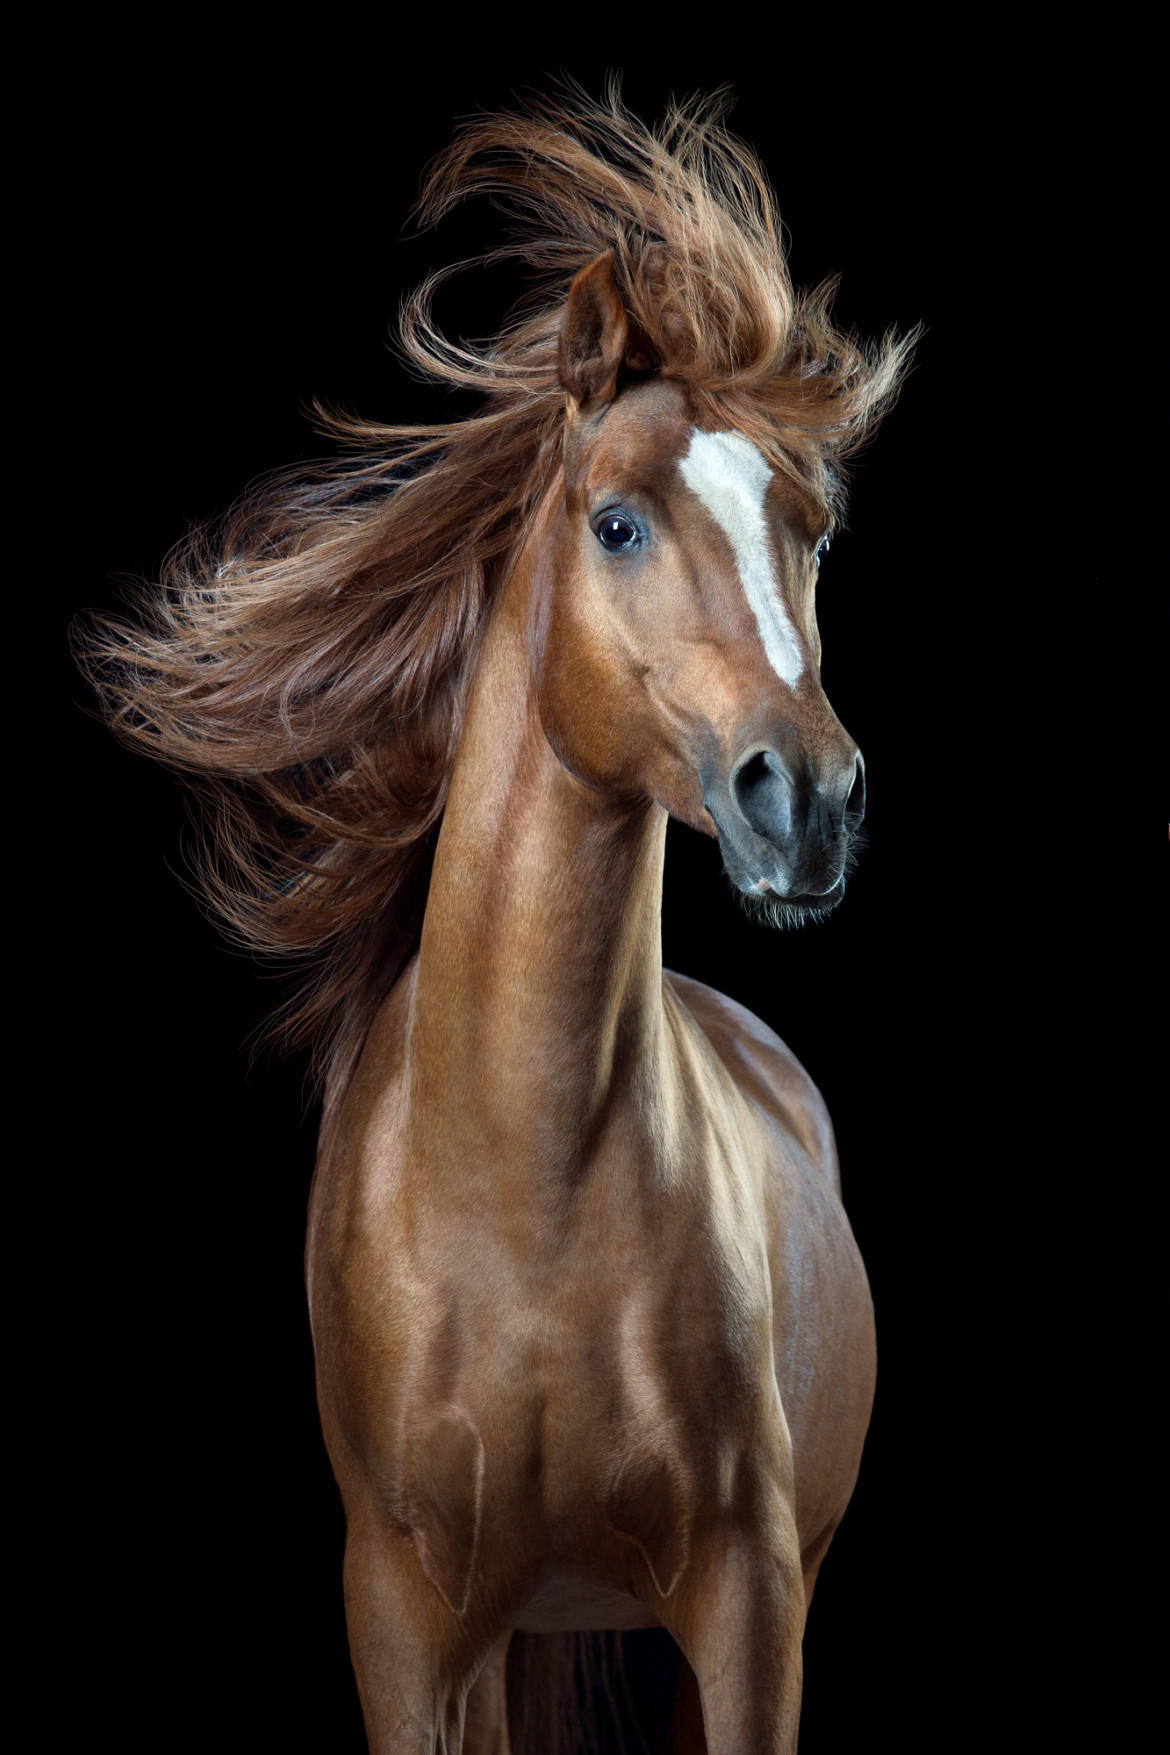 fot. Wiebke Haas, z cyklu "Horsestyle", 3. miejsce w kategorii Świat natury i dzika przyroda, SWPA 2018

Autor cyklu stara się uchwycić "ludzkie" emocji koni. "Gdy ludzie pytają się mnie czemu fotografuję konie, odpowiadam, że podziwiam ich piękno i grację. Ale jest też inny powód. Konie potrafią być niezwykle zabawne. Moją pasją jest wydobywanie z nich iście ludzkich zachowań" - opowiada Haas.